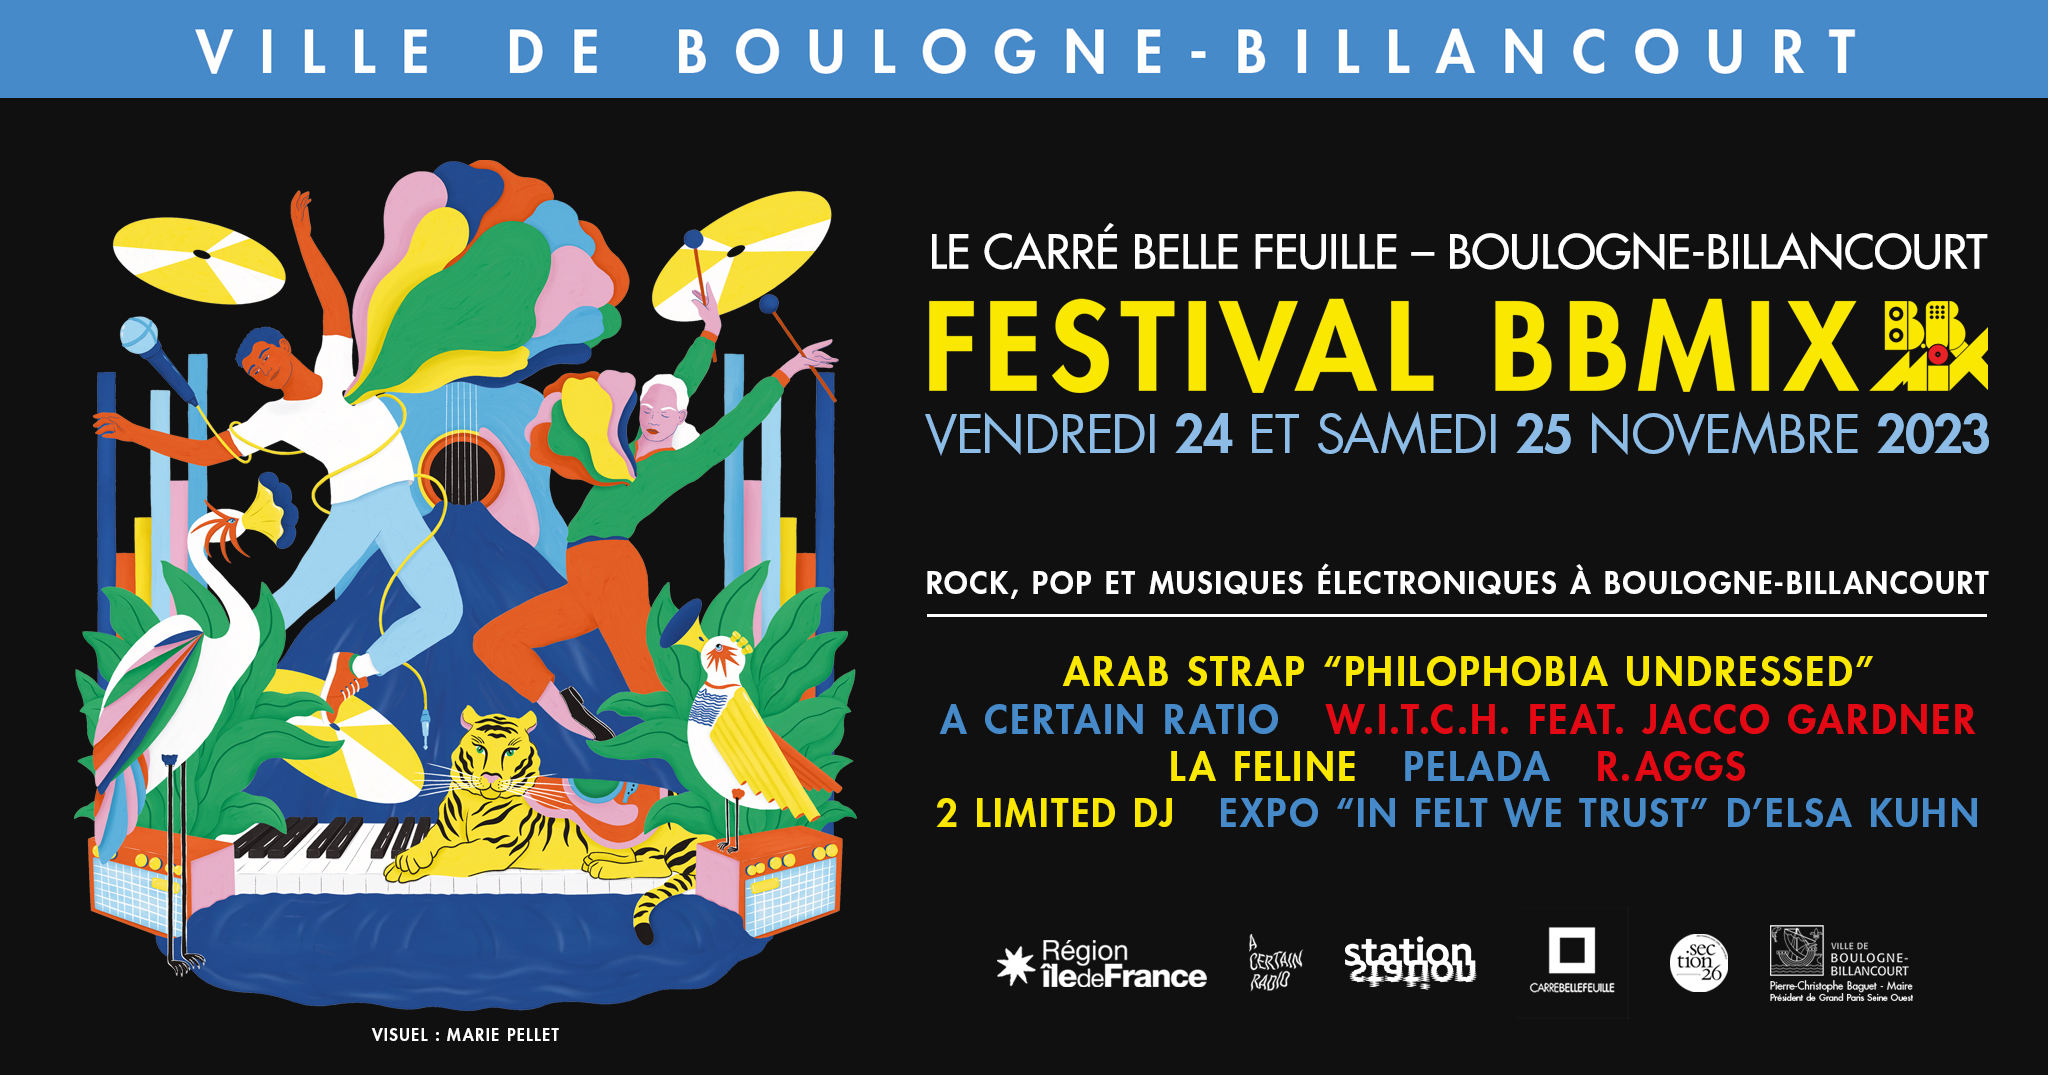 Marie Pellet - Illustration - graphic design - portfolio - Festival - 2023 - Musique - BBMIX - Boulogne-Billancourt - bannière